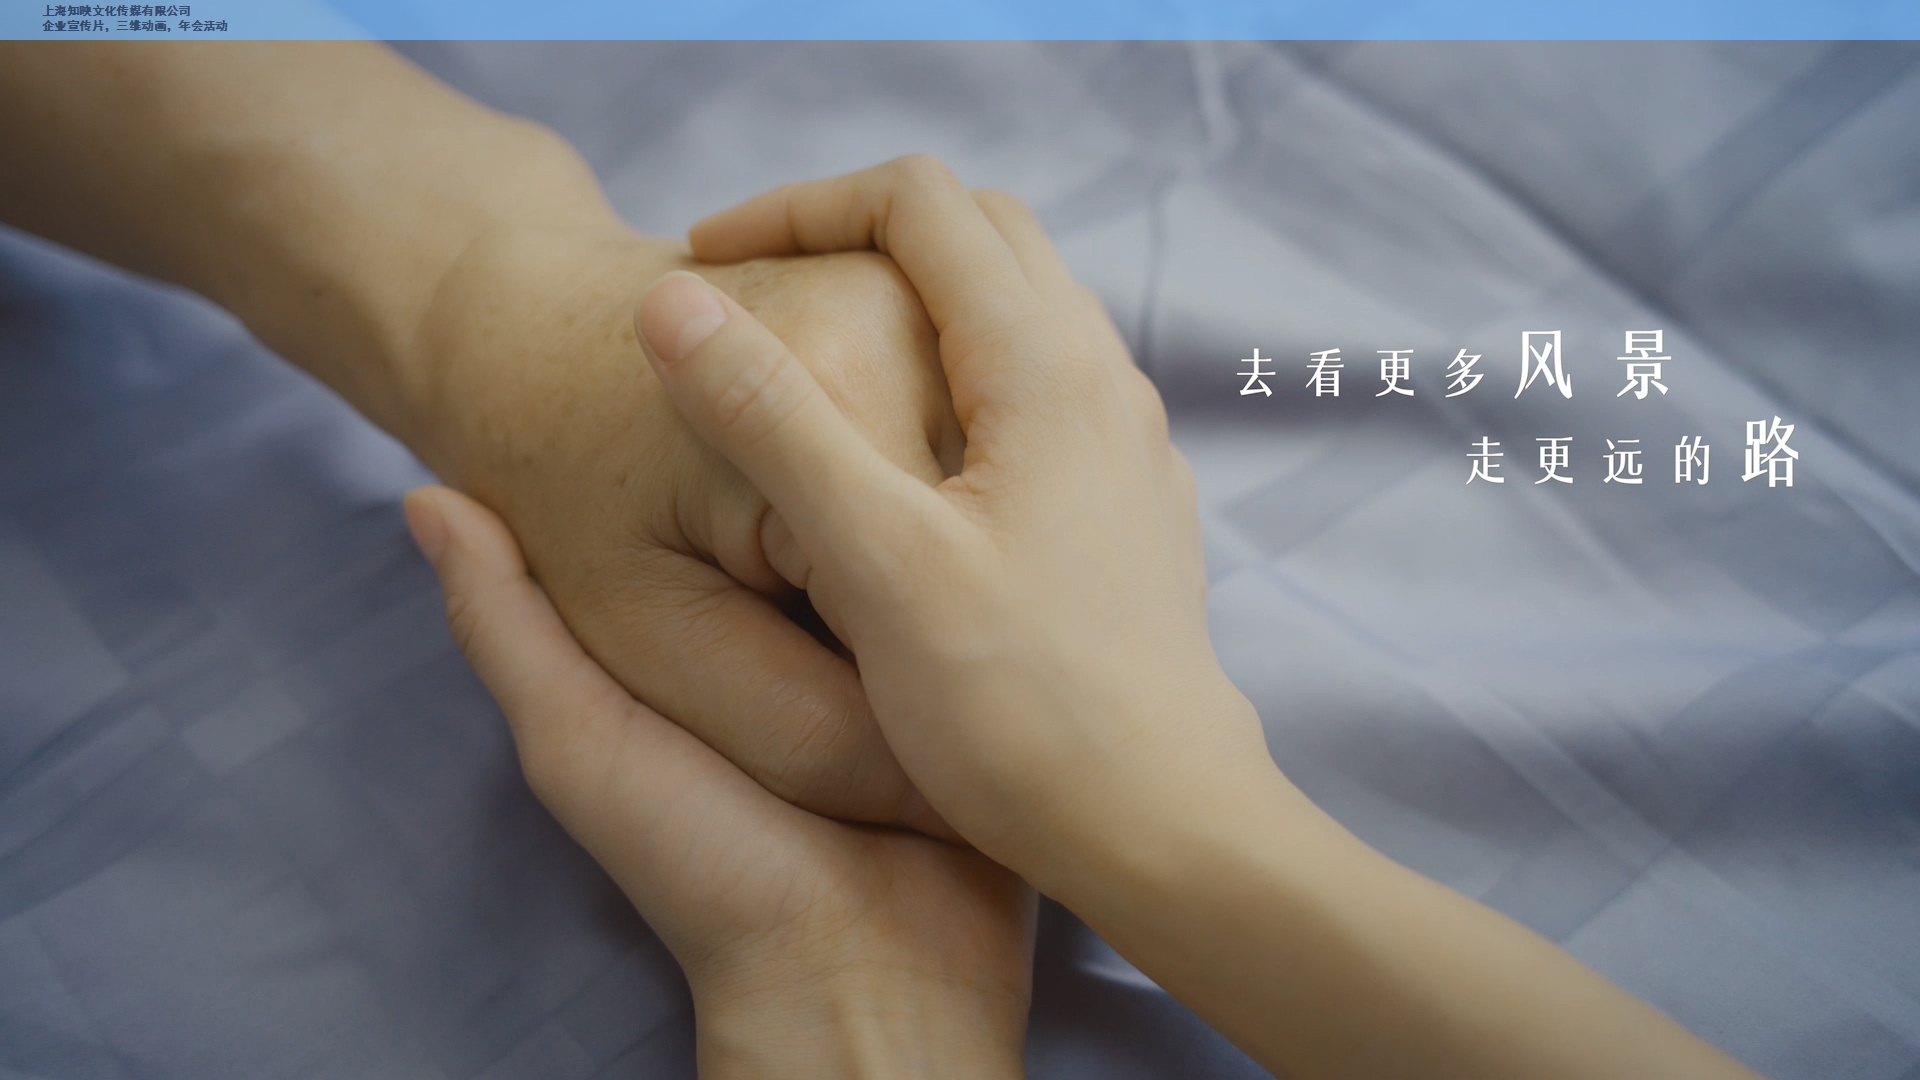 上海医疗视频制作* 信息推荐 上海知映文化传媒供应